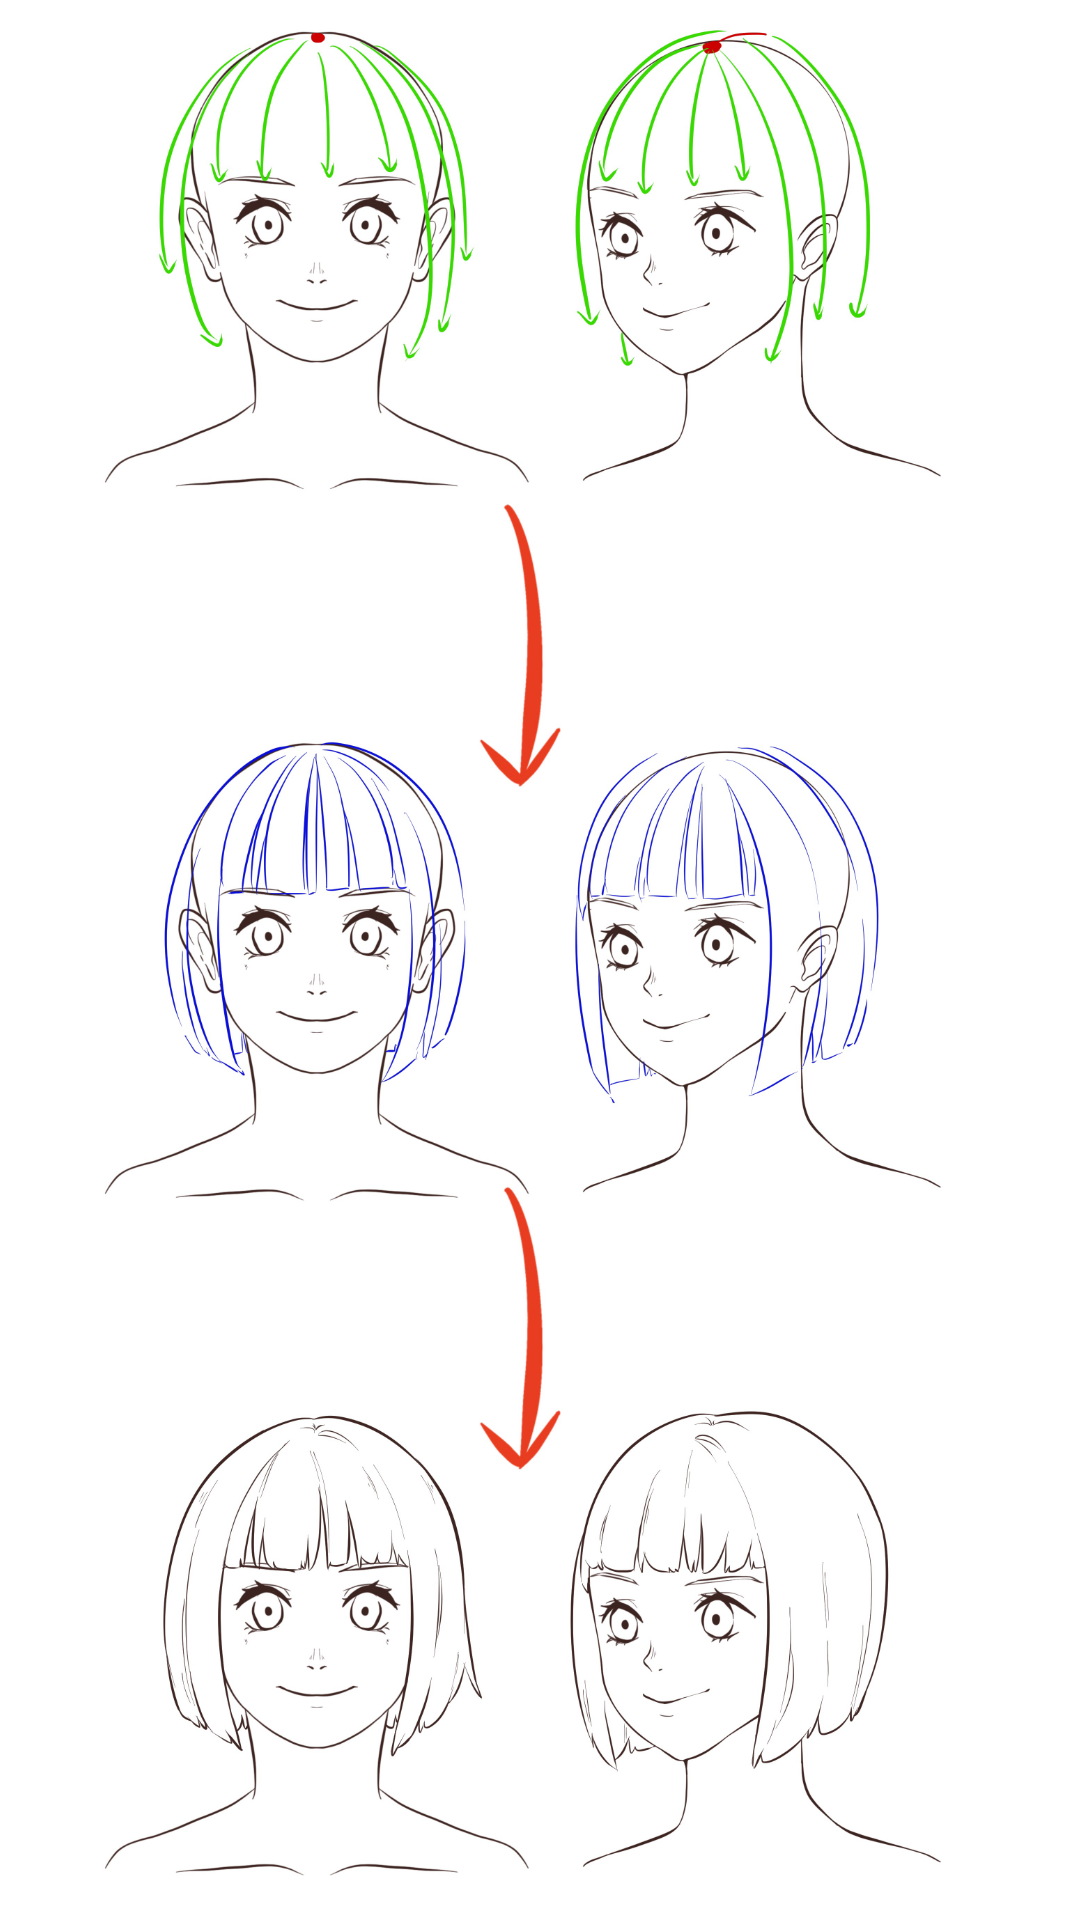 漫画角色头发的绘制技法 part 02 头发的基础绘制方法 - 知乎